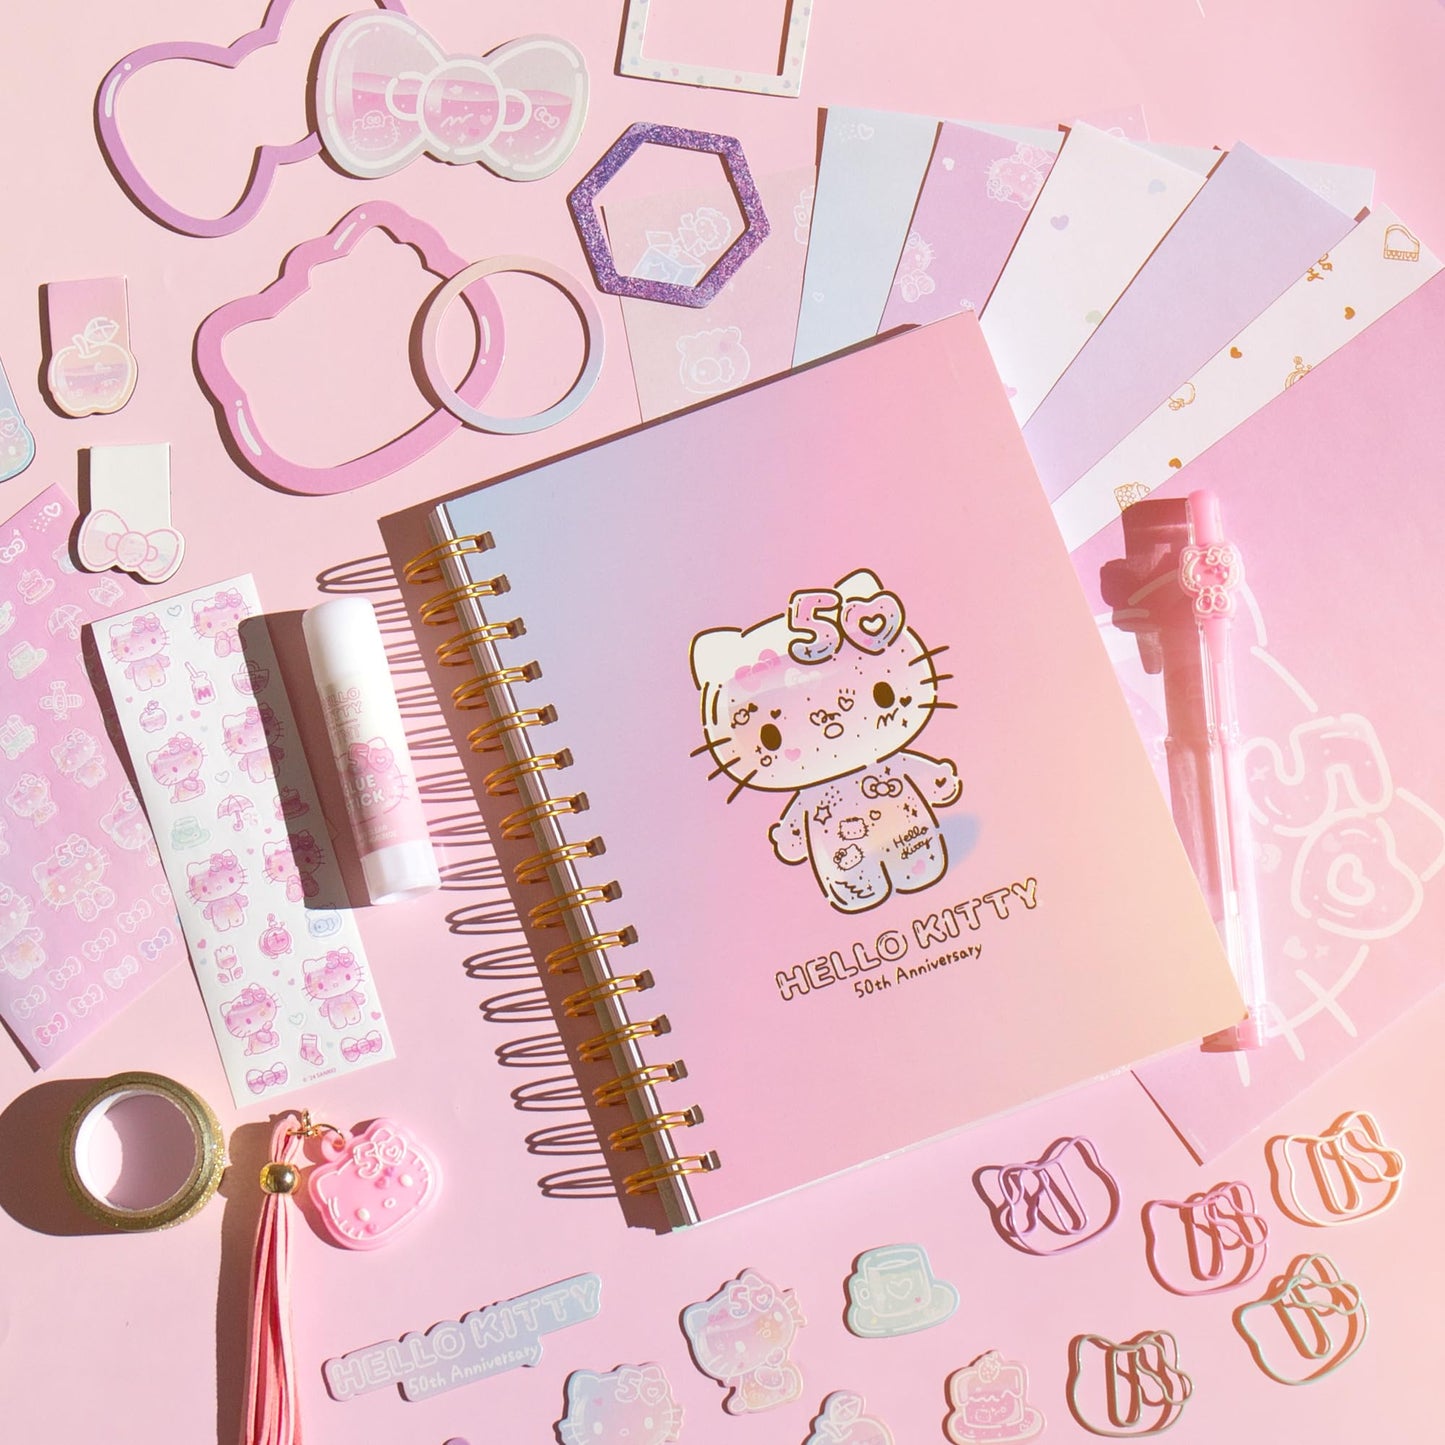 Set de Journaling Oficial de Hello Kitty Sanrio 50th Anniversary